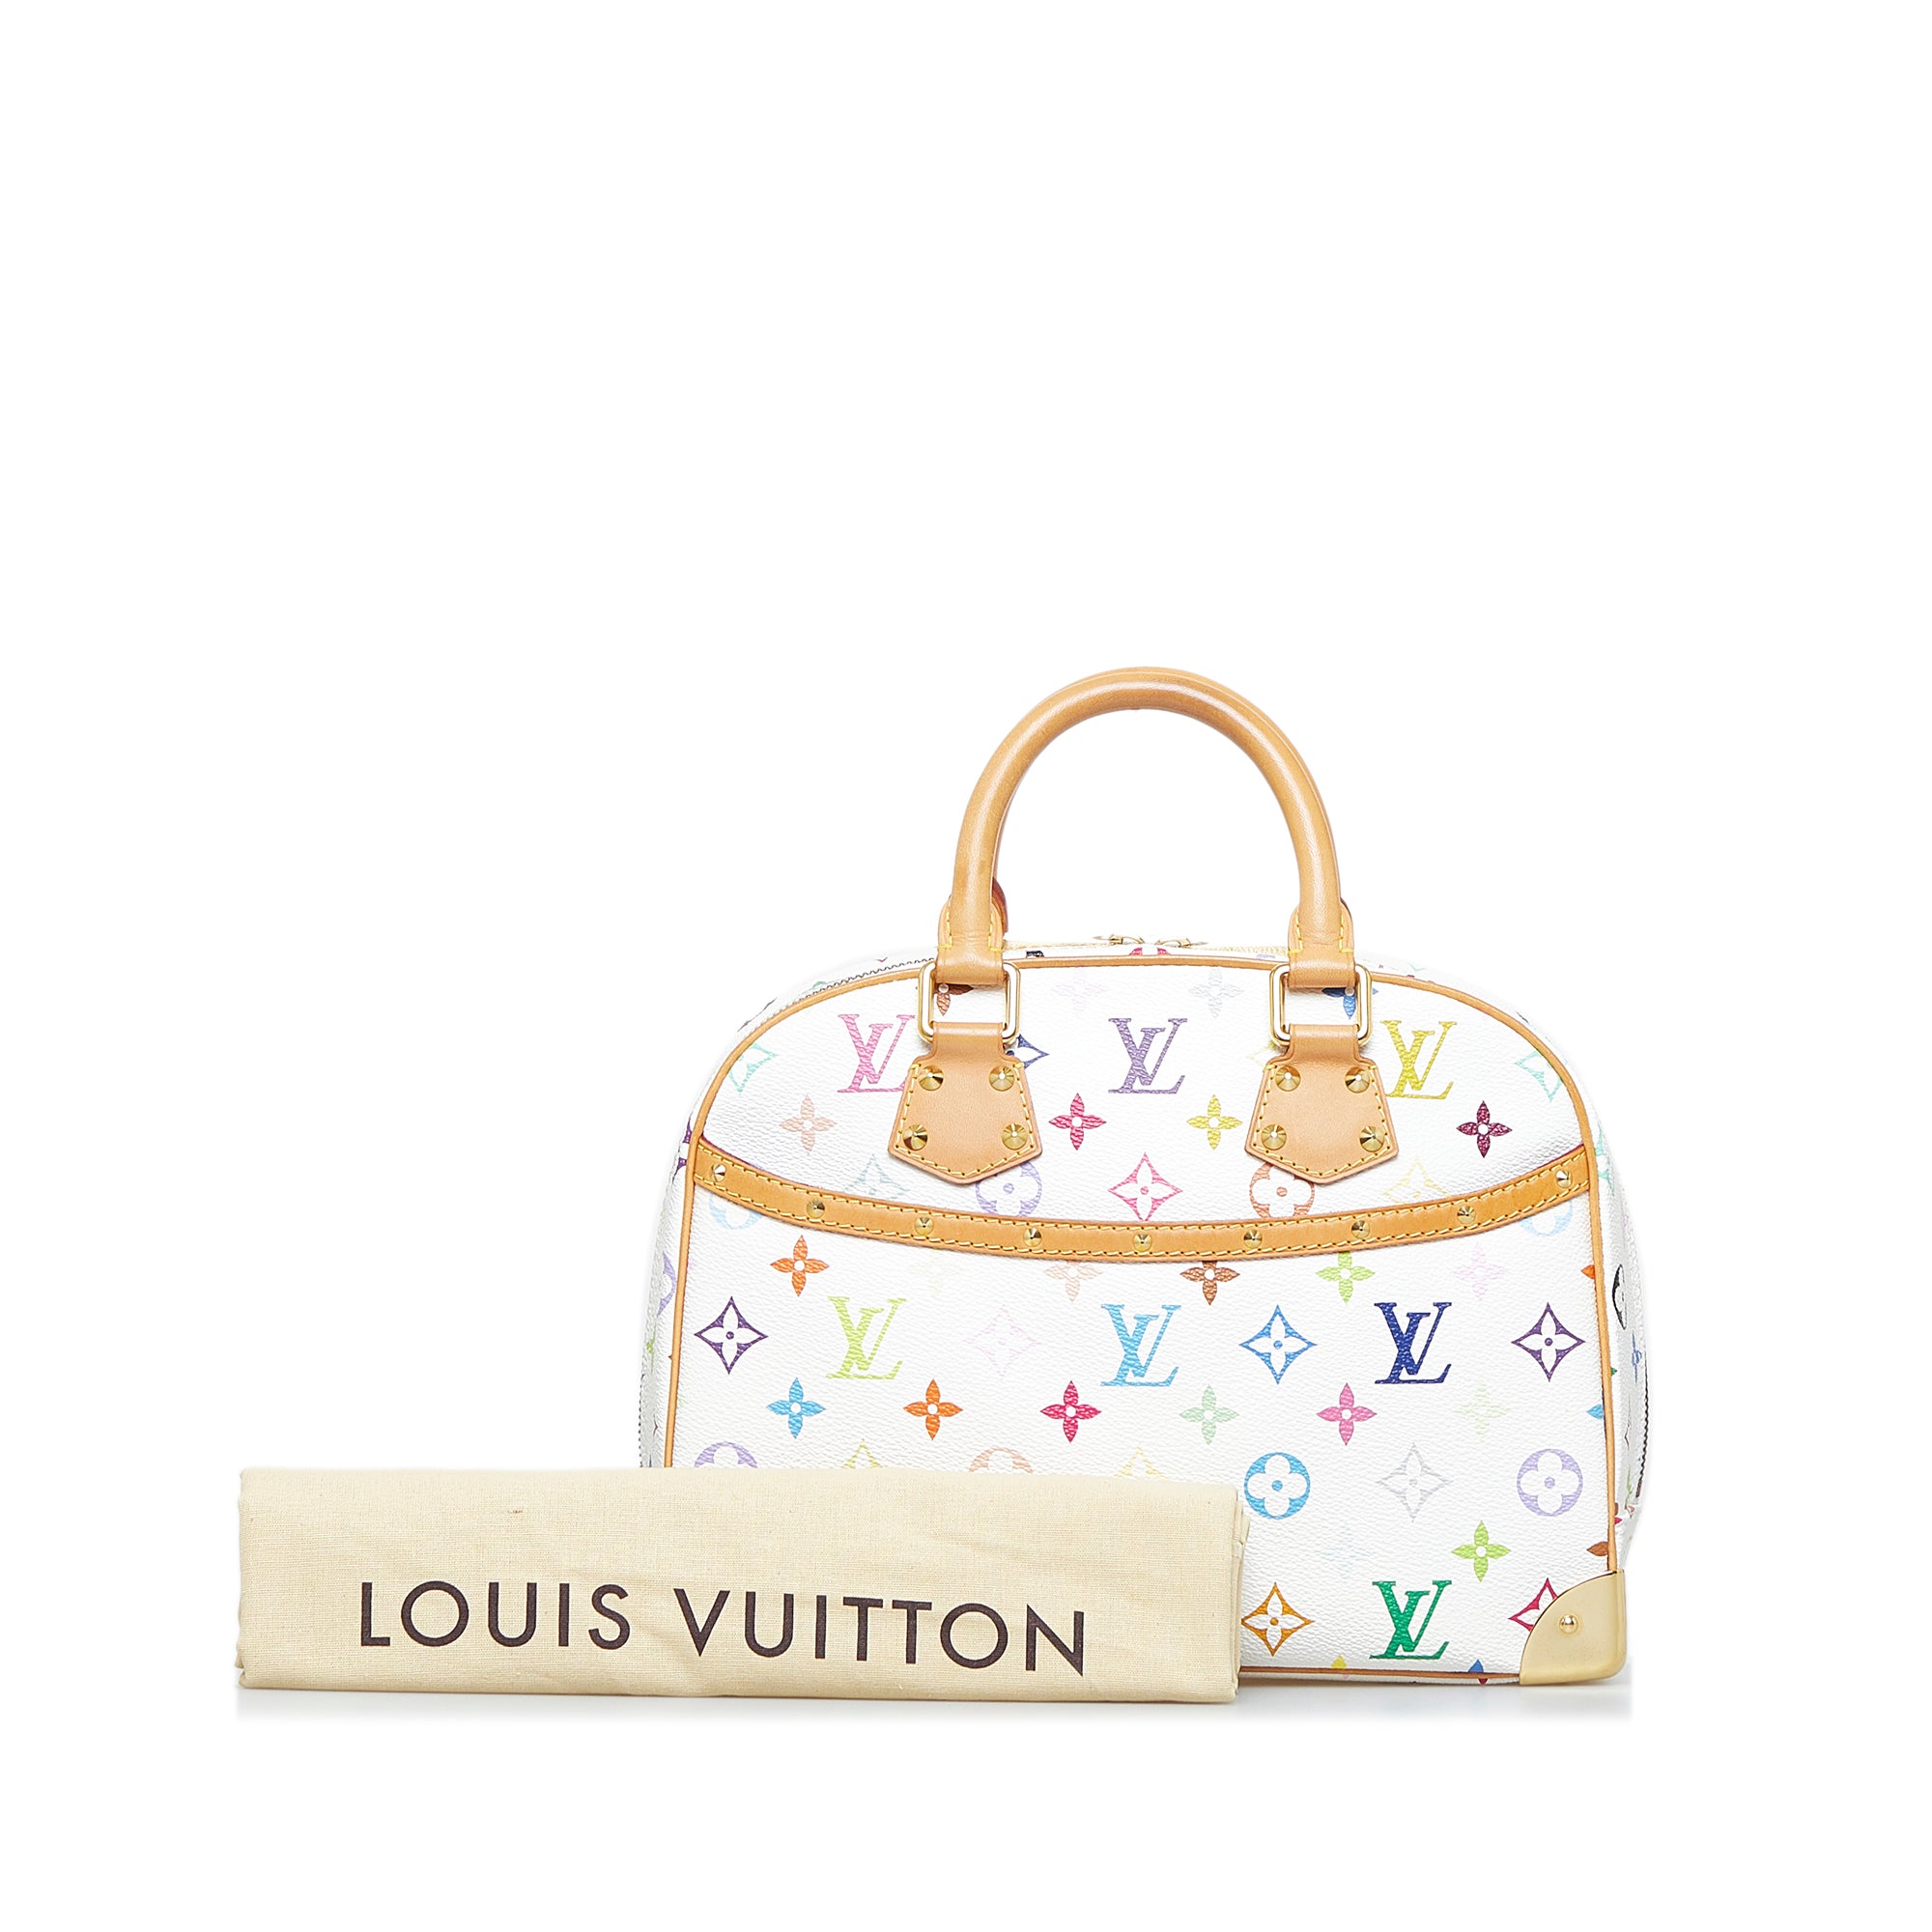 LOUIS VUITTON Monogram Trouville Handbag